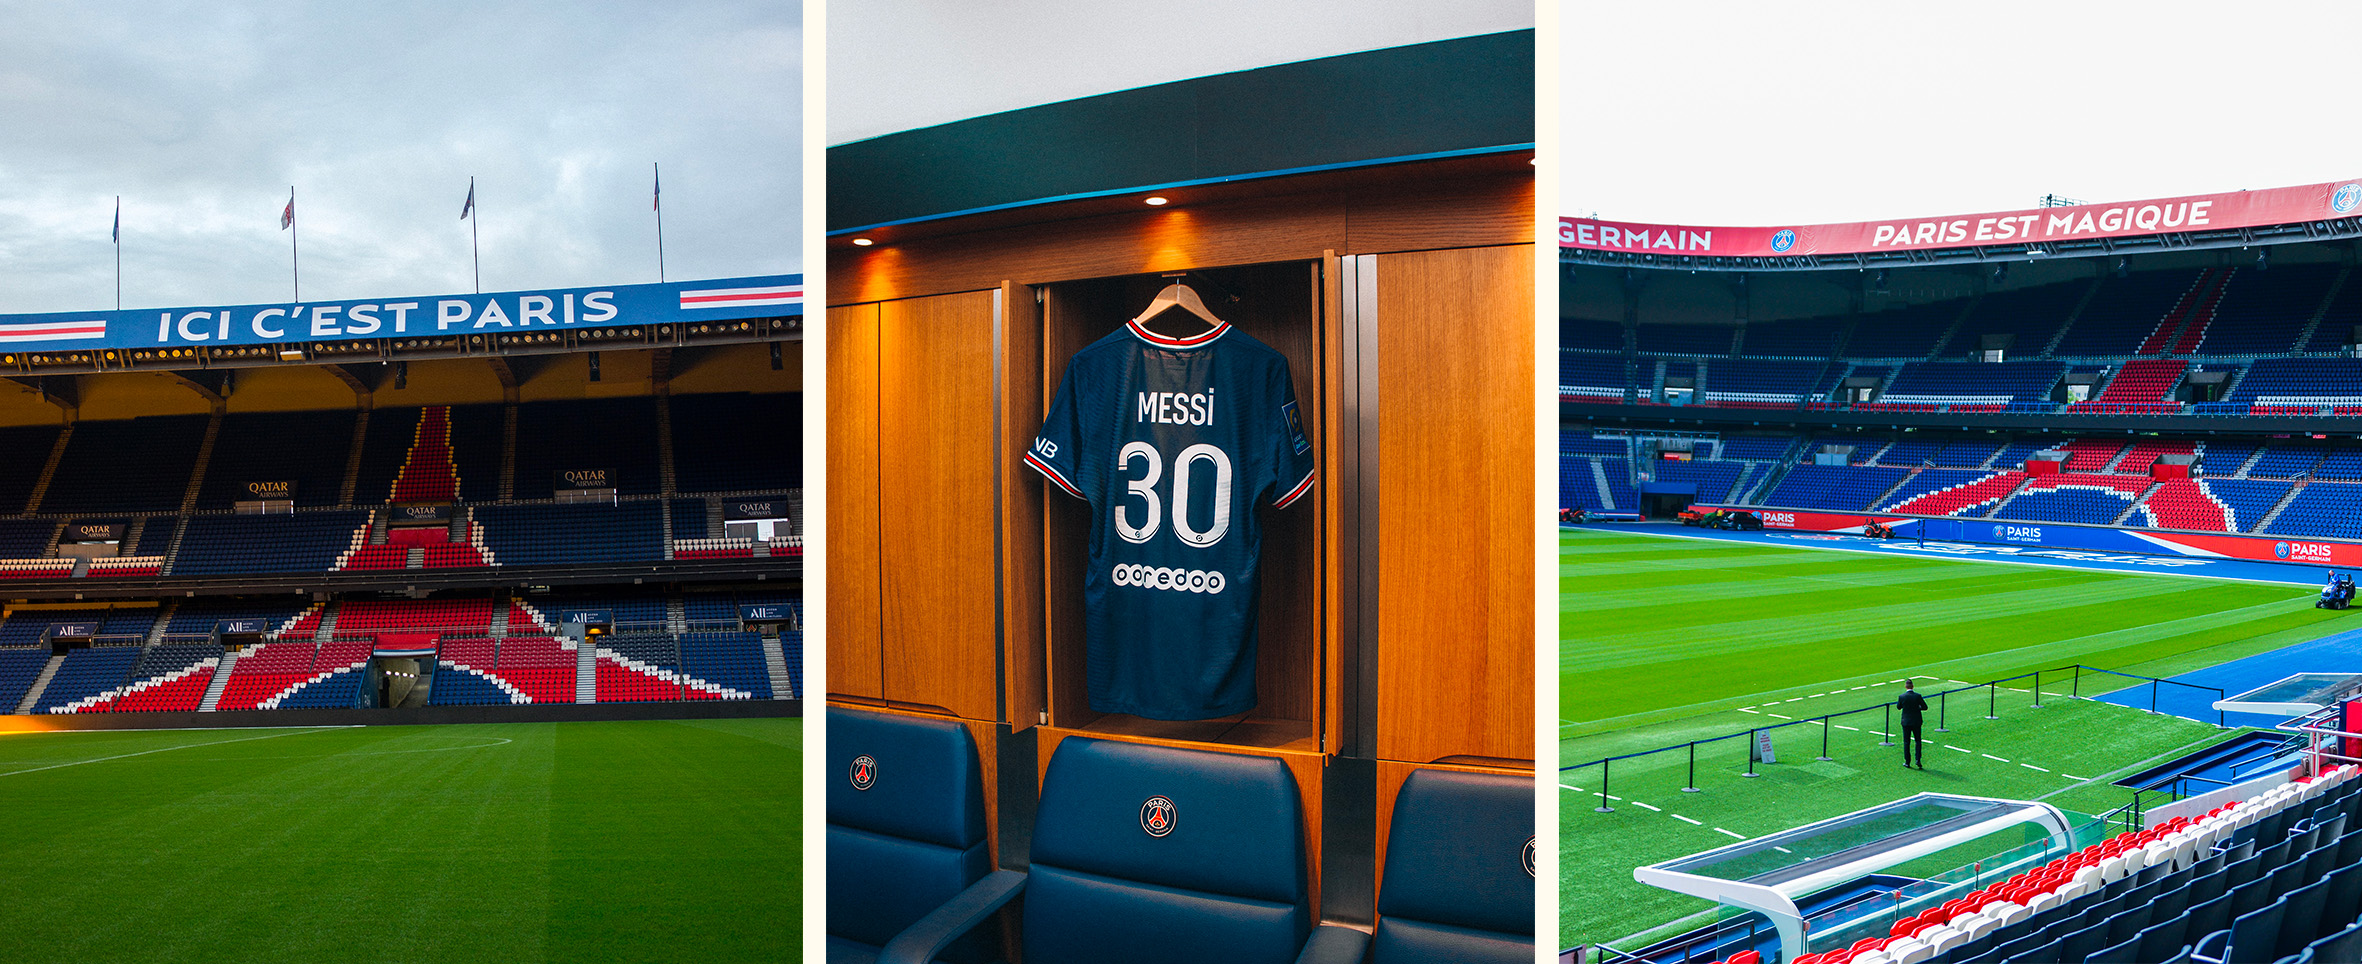 Fotos de los lugares que se ven durante el recorrido al interior del estadio del PSG Germain 